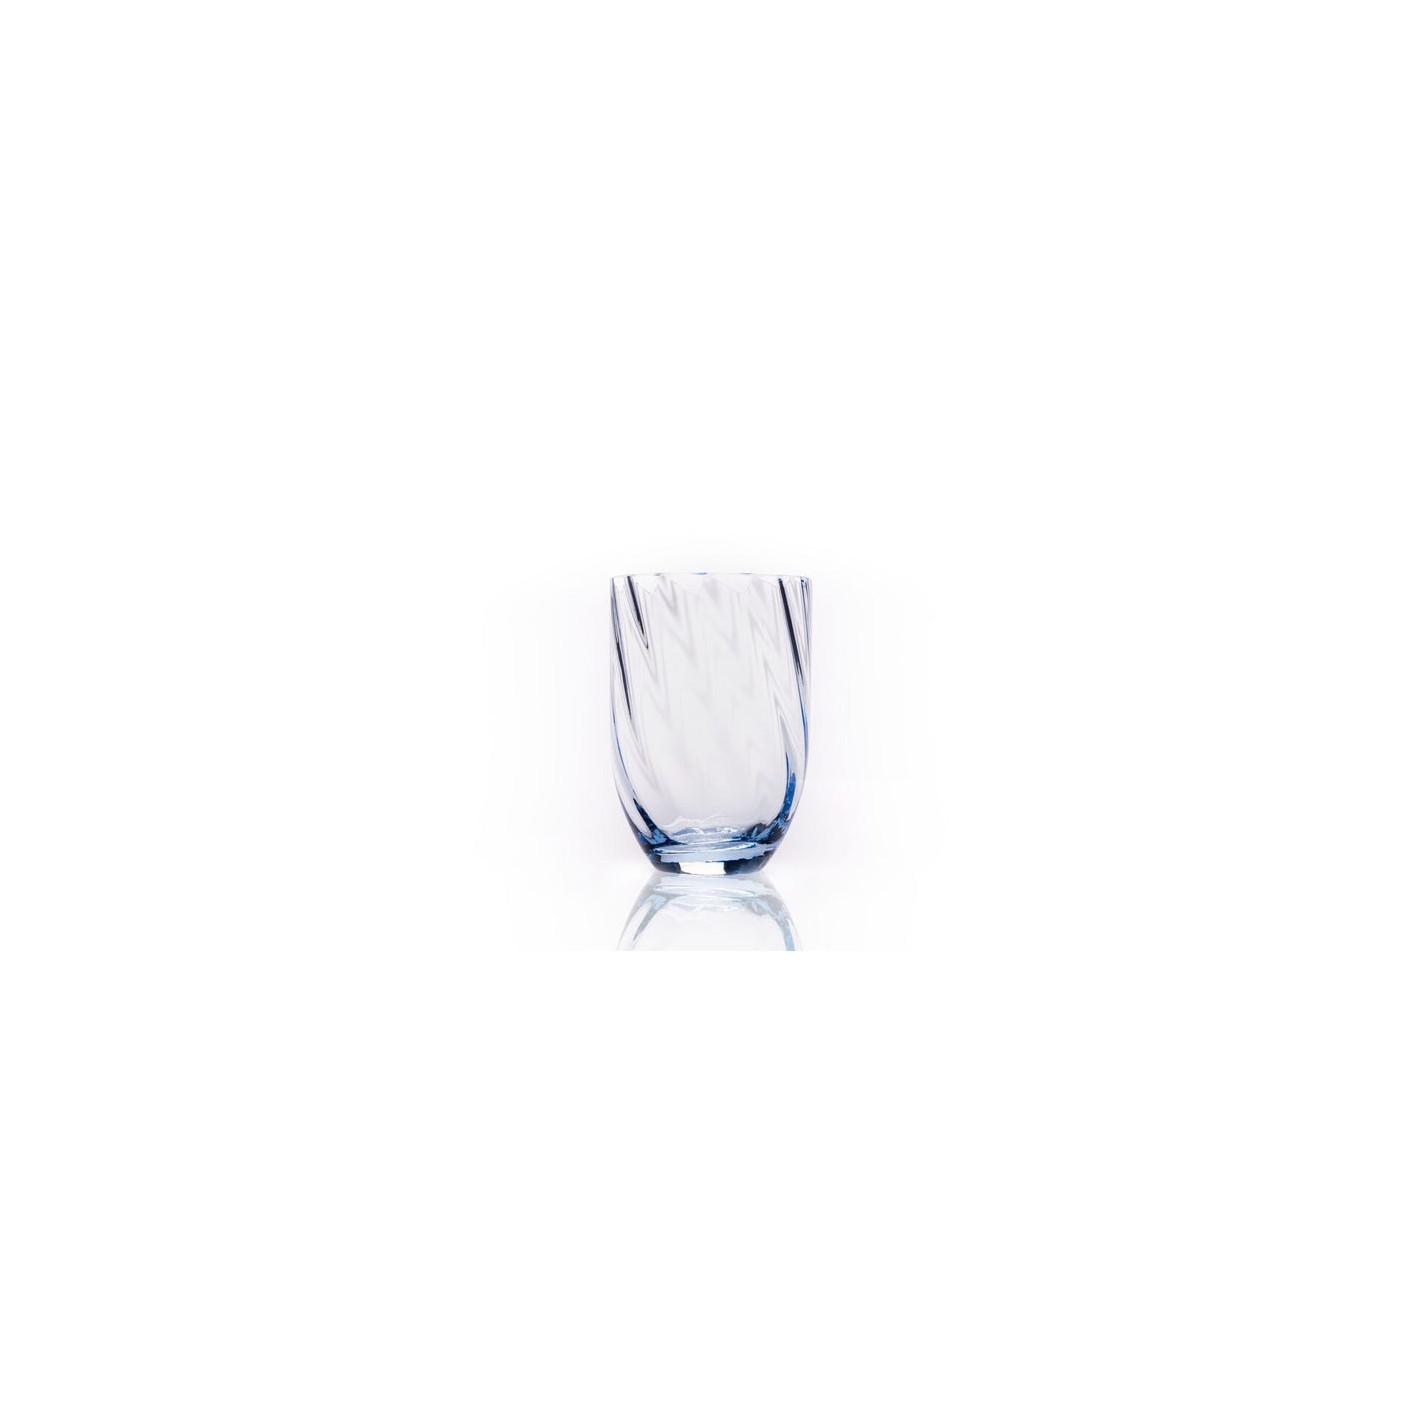 Køb de smukke Swirl Glas (250 ml) i lyseblå her fra Anna Lipa